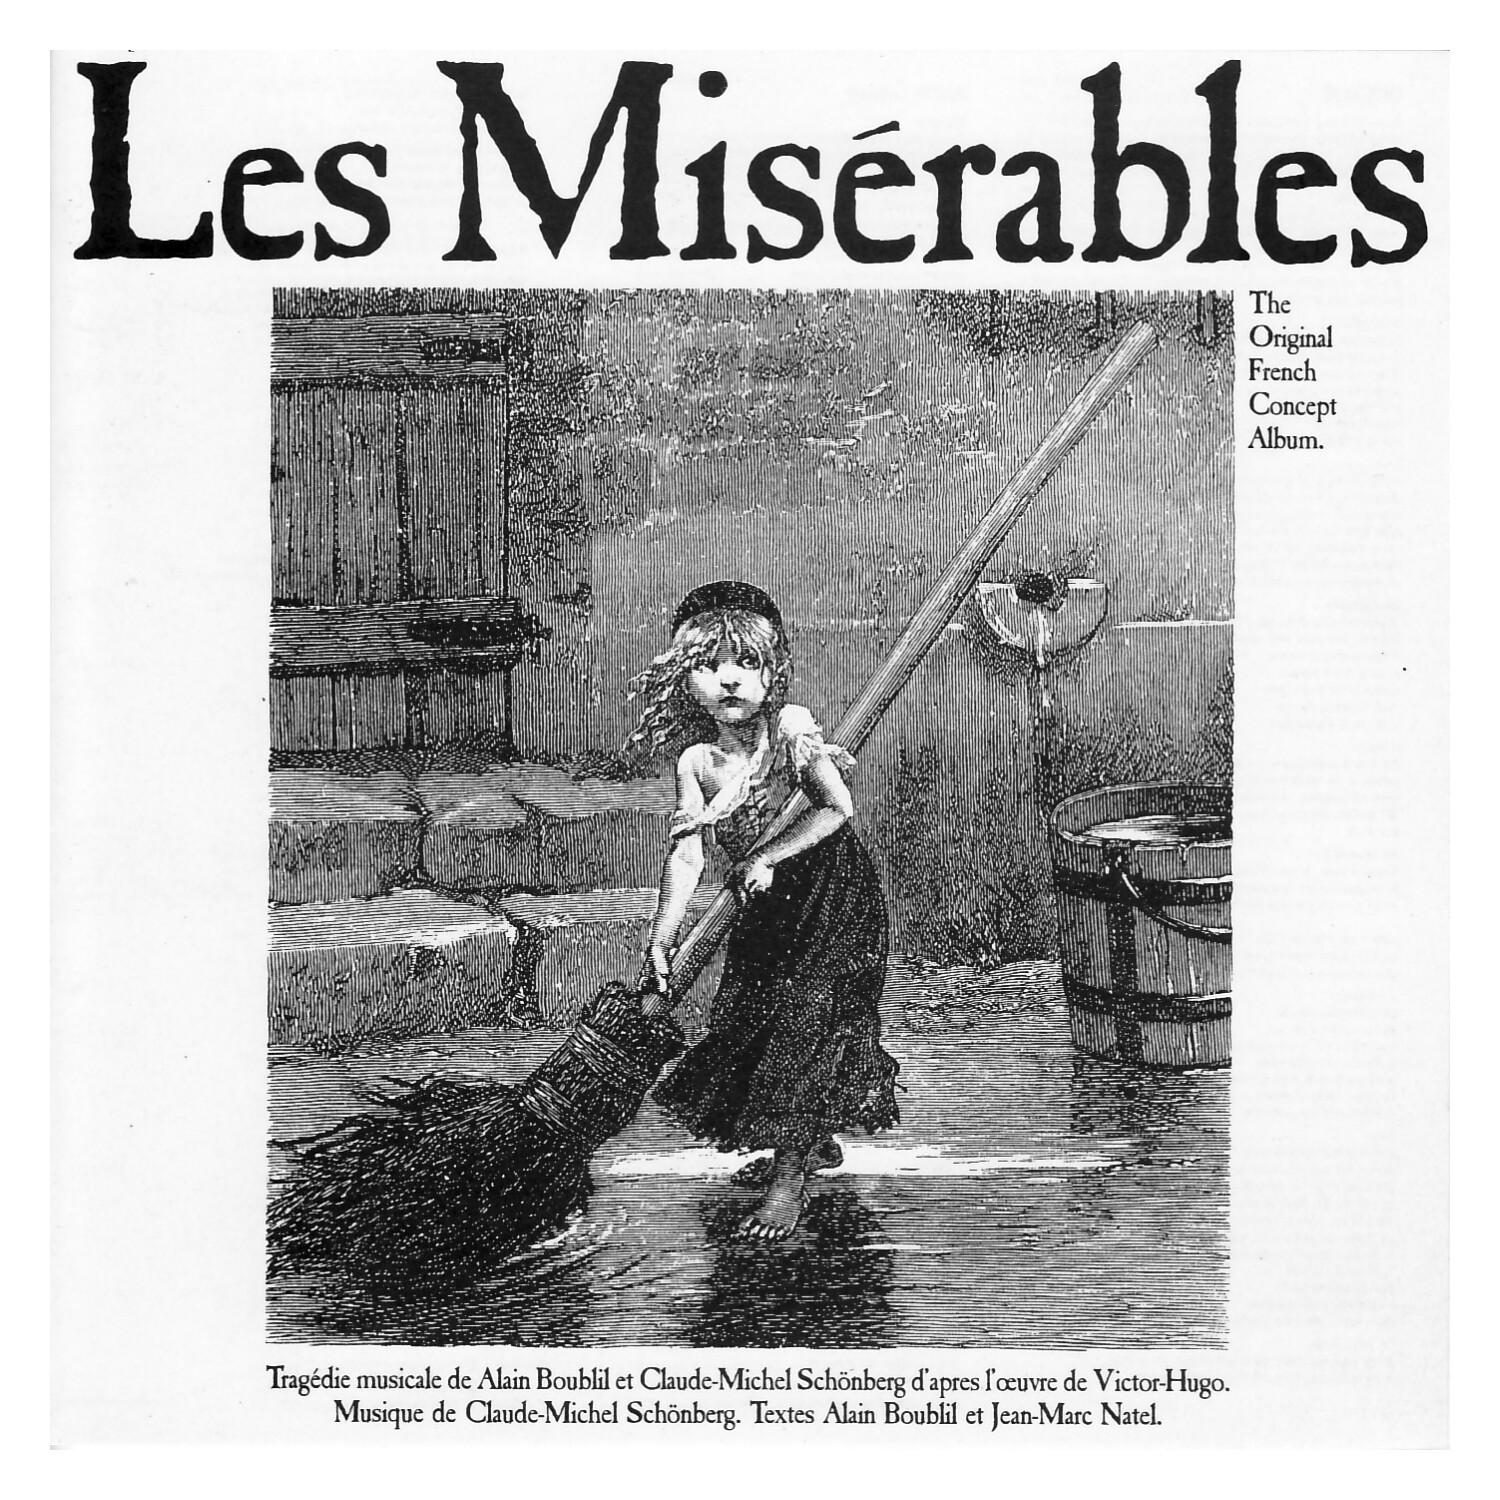 Les Mise rables Original French Concept Album